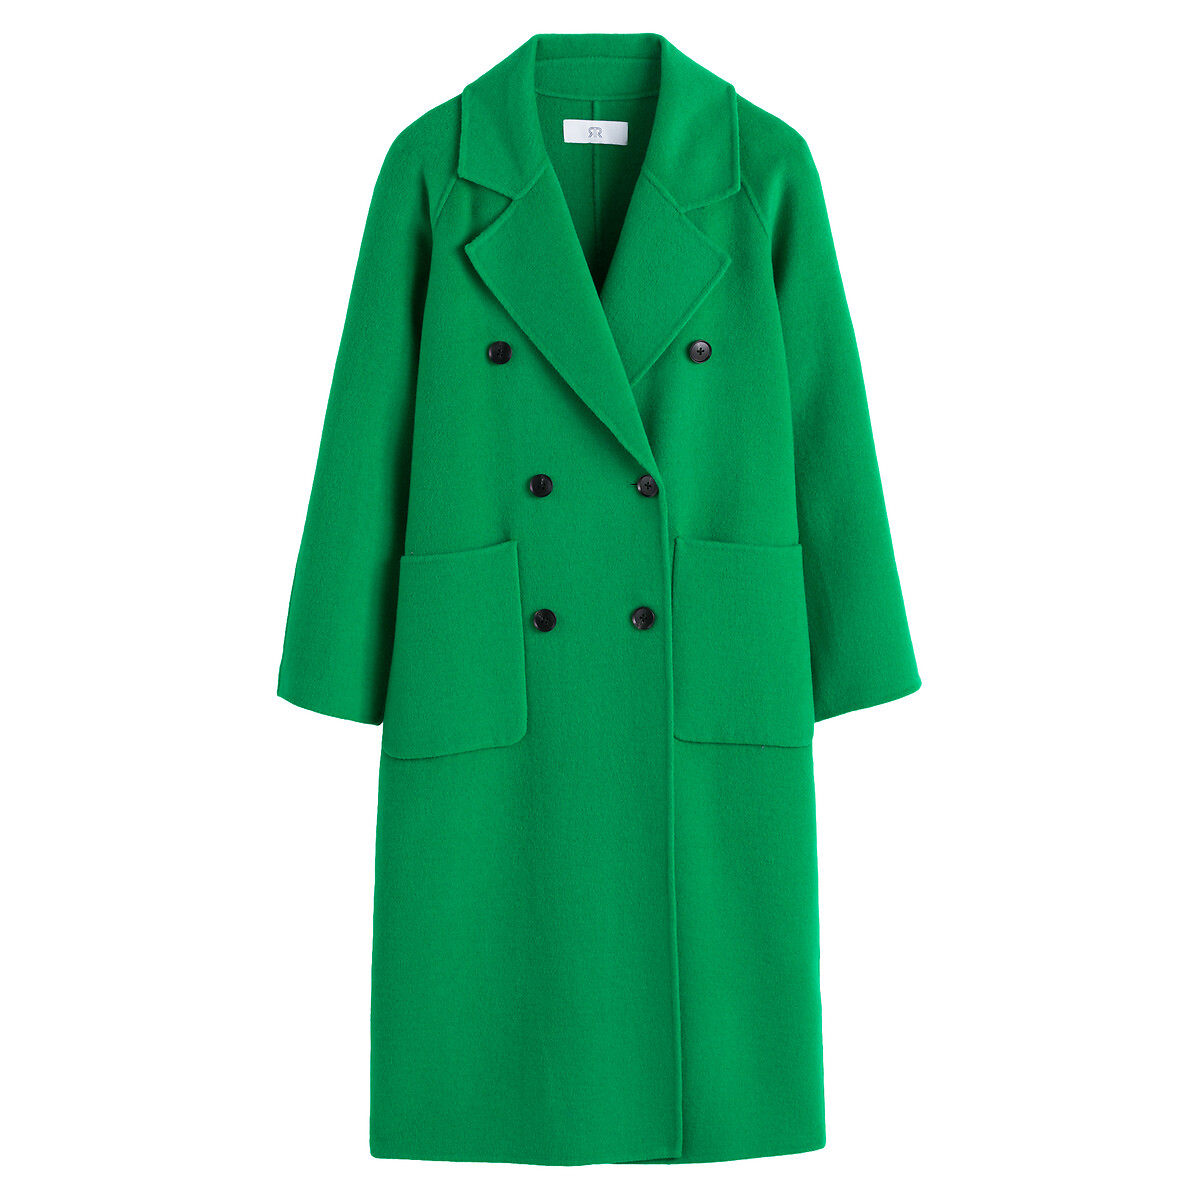 Пальто Из шерстяного драпа 52 (FR) - 58 (RUS) зеленый LaRedoute, размер 52 (FR) - 58 (RUS) Пальто Из шерстяного драпа 52 (FR) - 58 (RUS) зеленый - фото 5